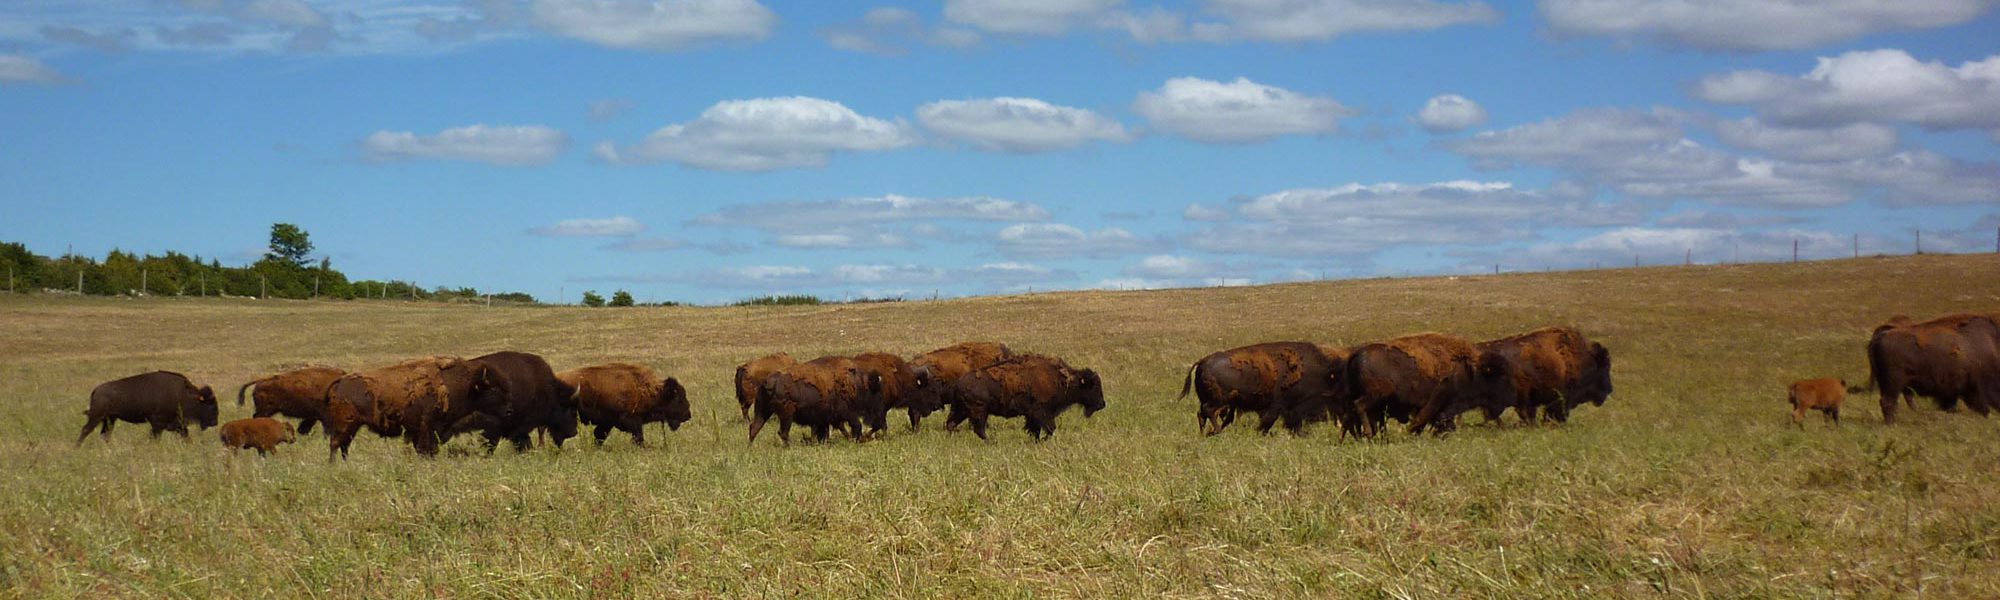 s-troupeau-bisons